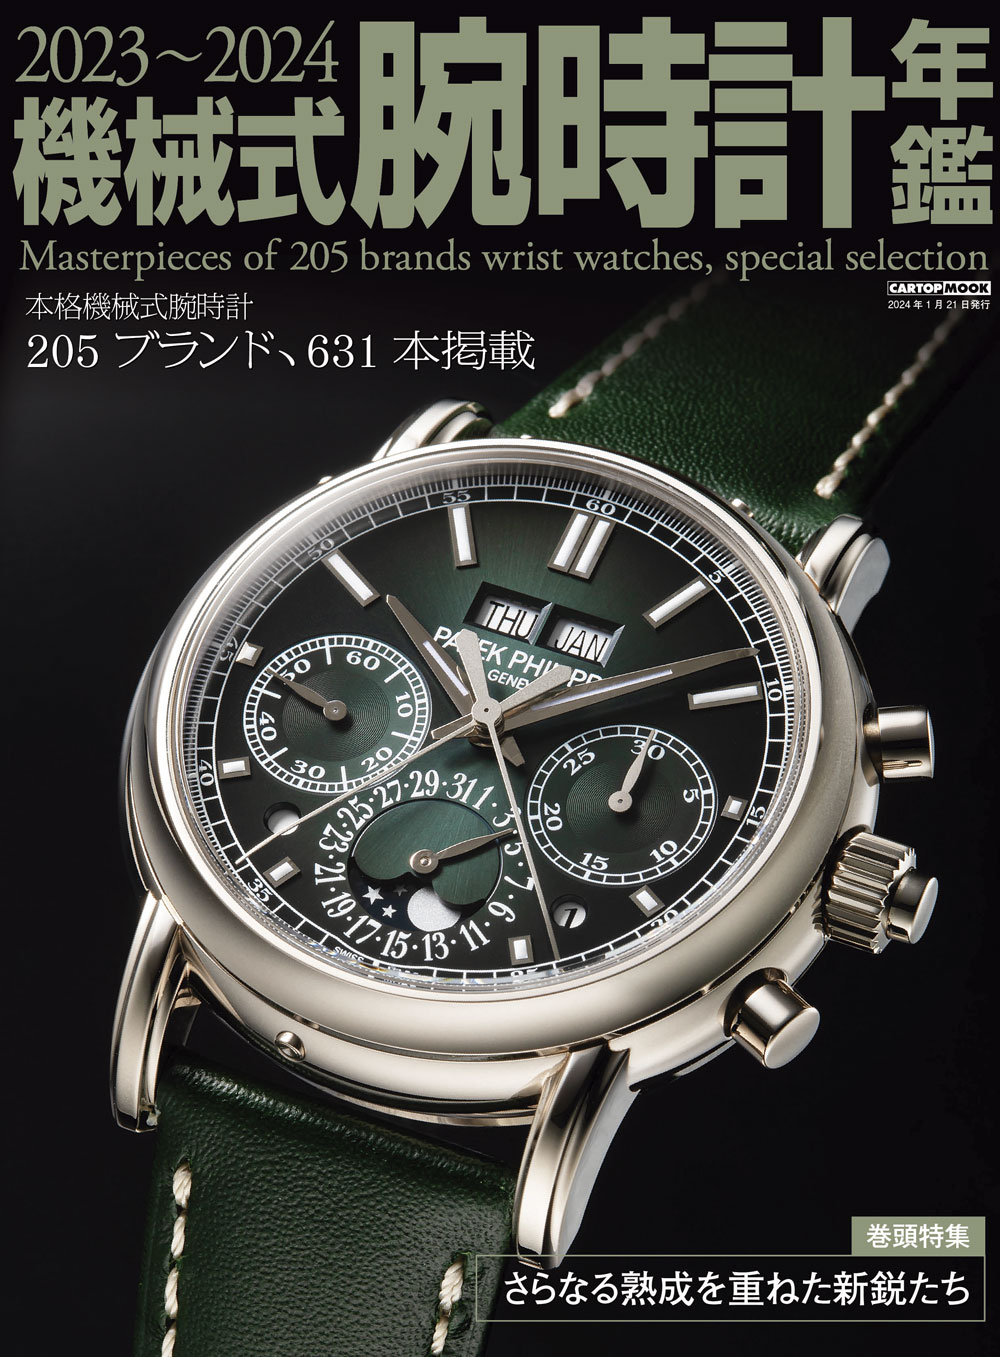 C's-Factory｜書籍｜2023-2024機械式腕時計年鑑